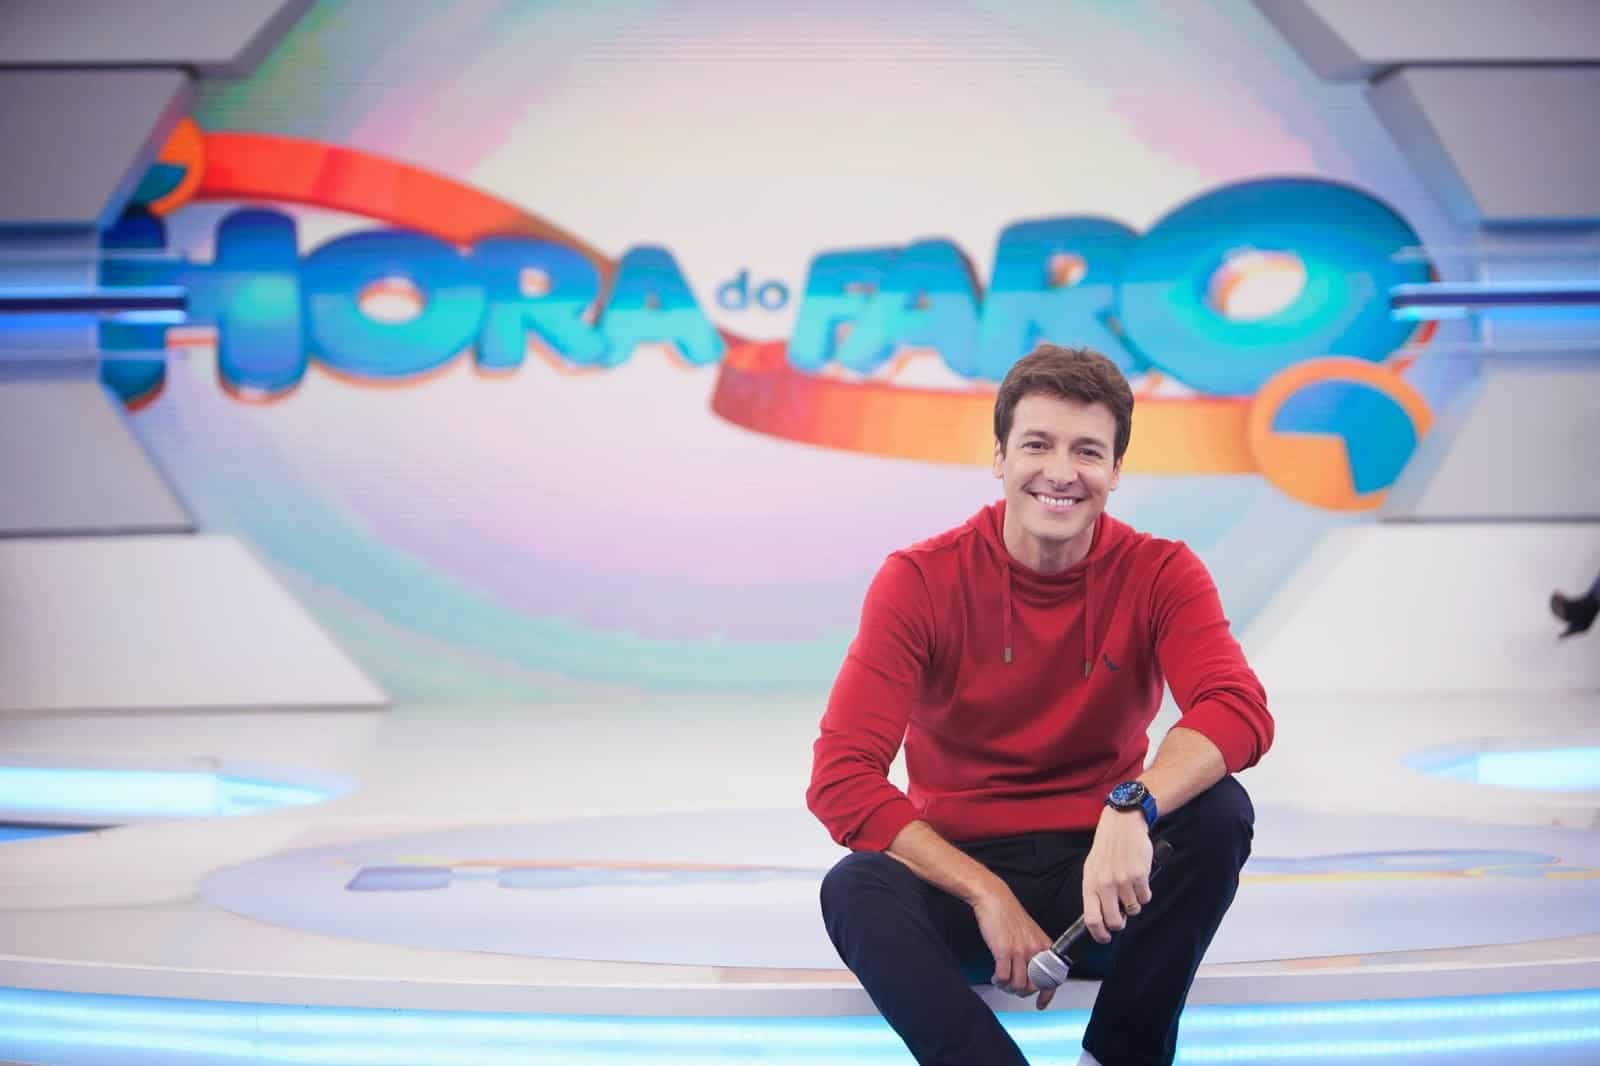 Audiência da TV: Rodrigo Faro registra quase o dobro de Eliana